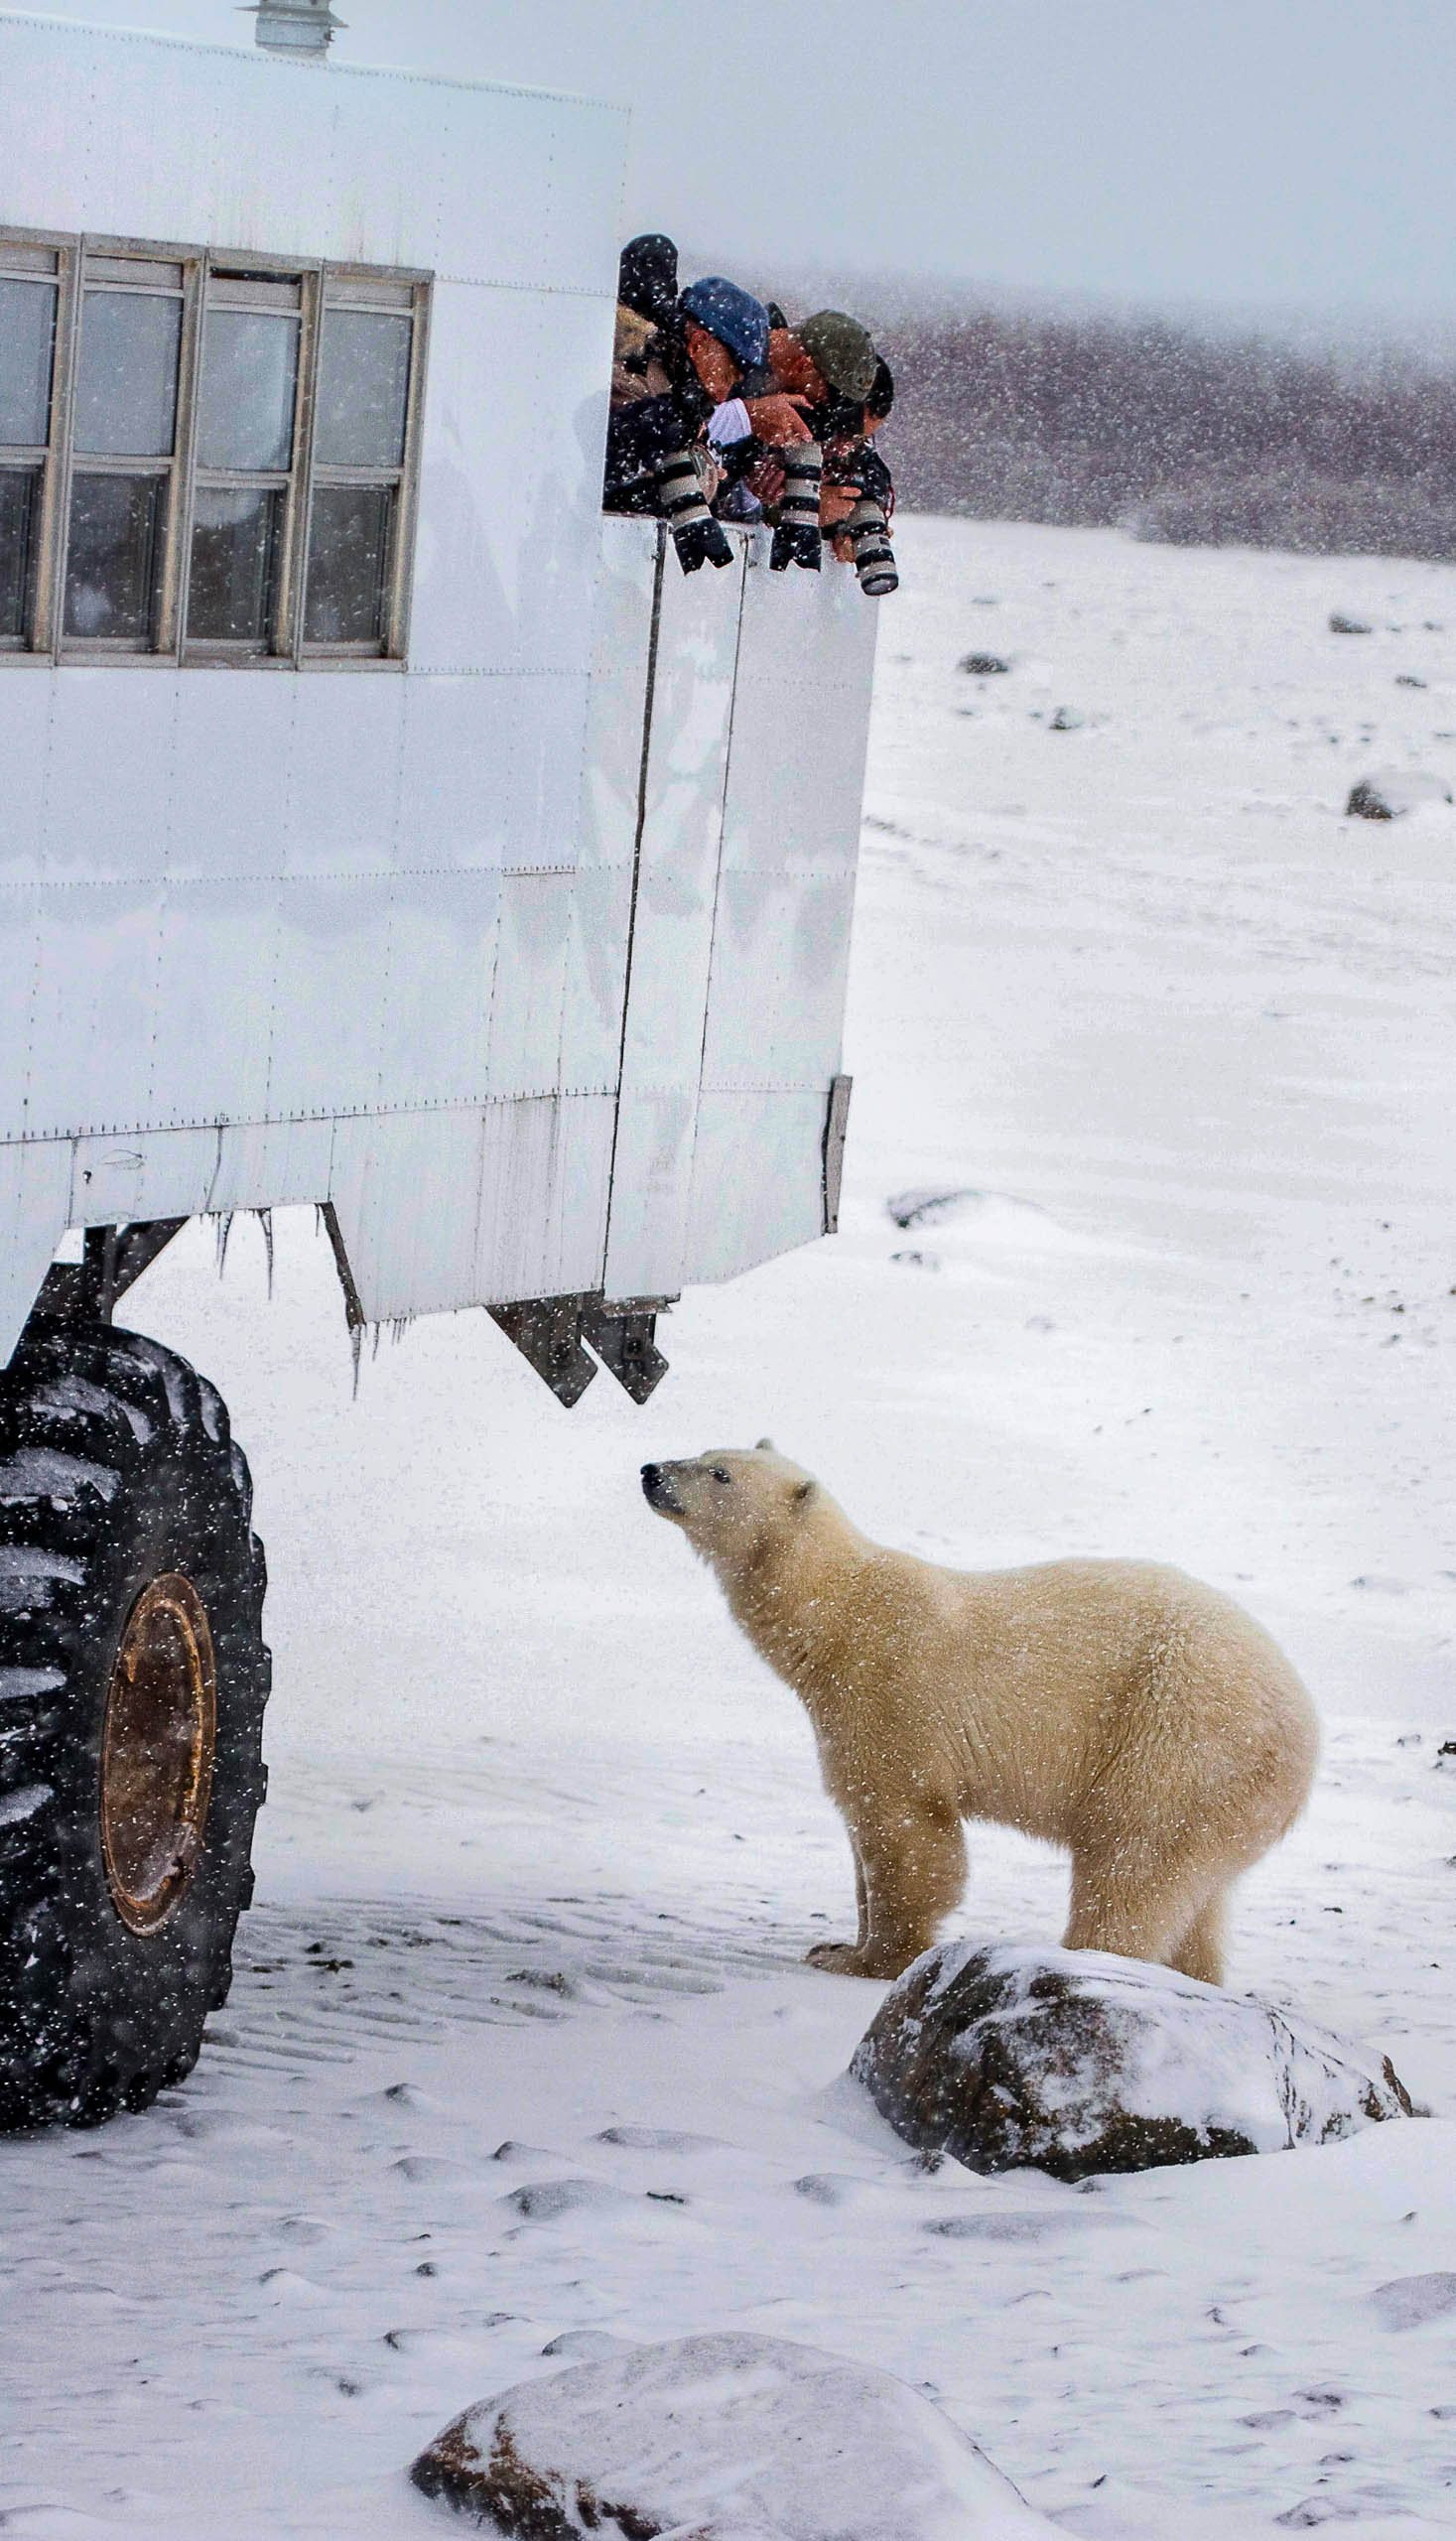 Photographers taking photos of a polar bear.